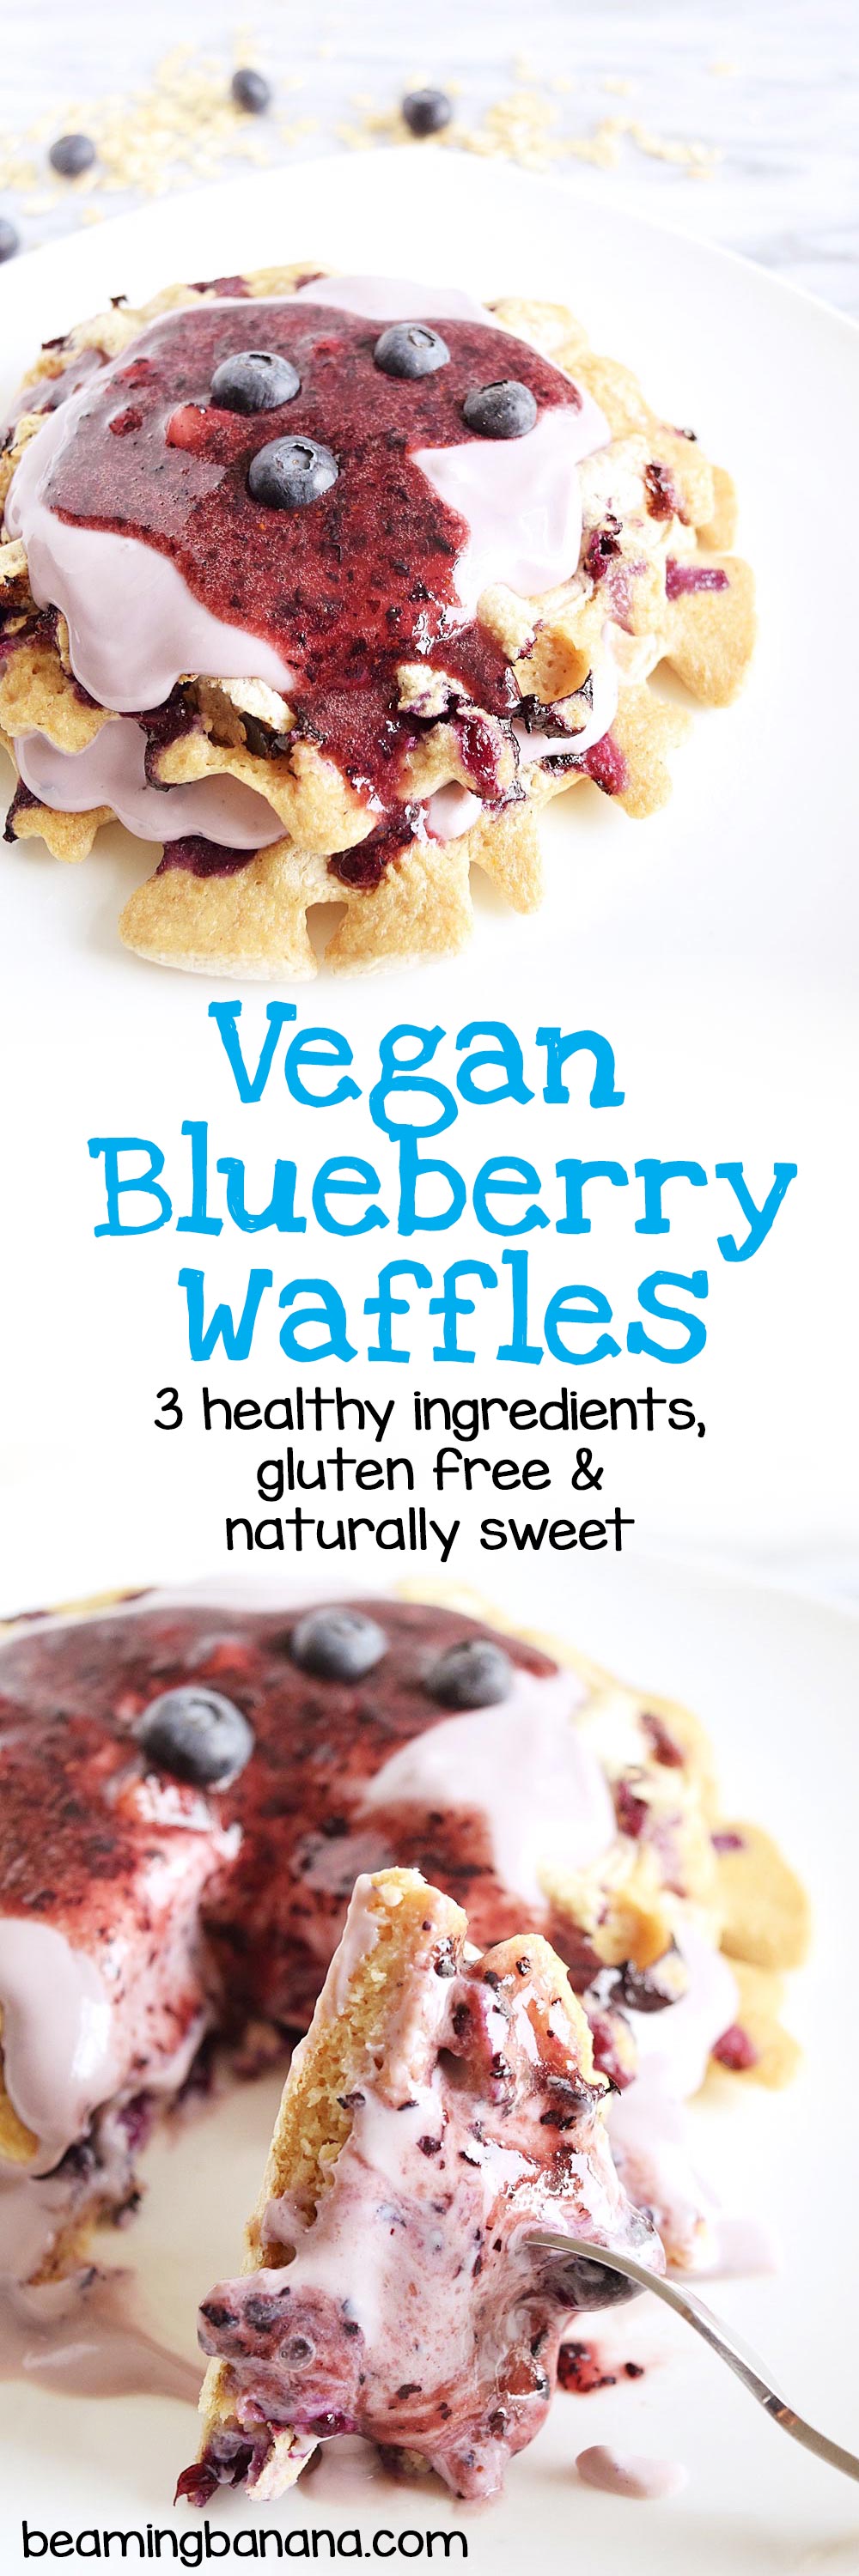 Vegan Blueberry Waffles - Beaming Banana